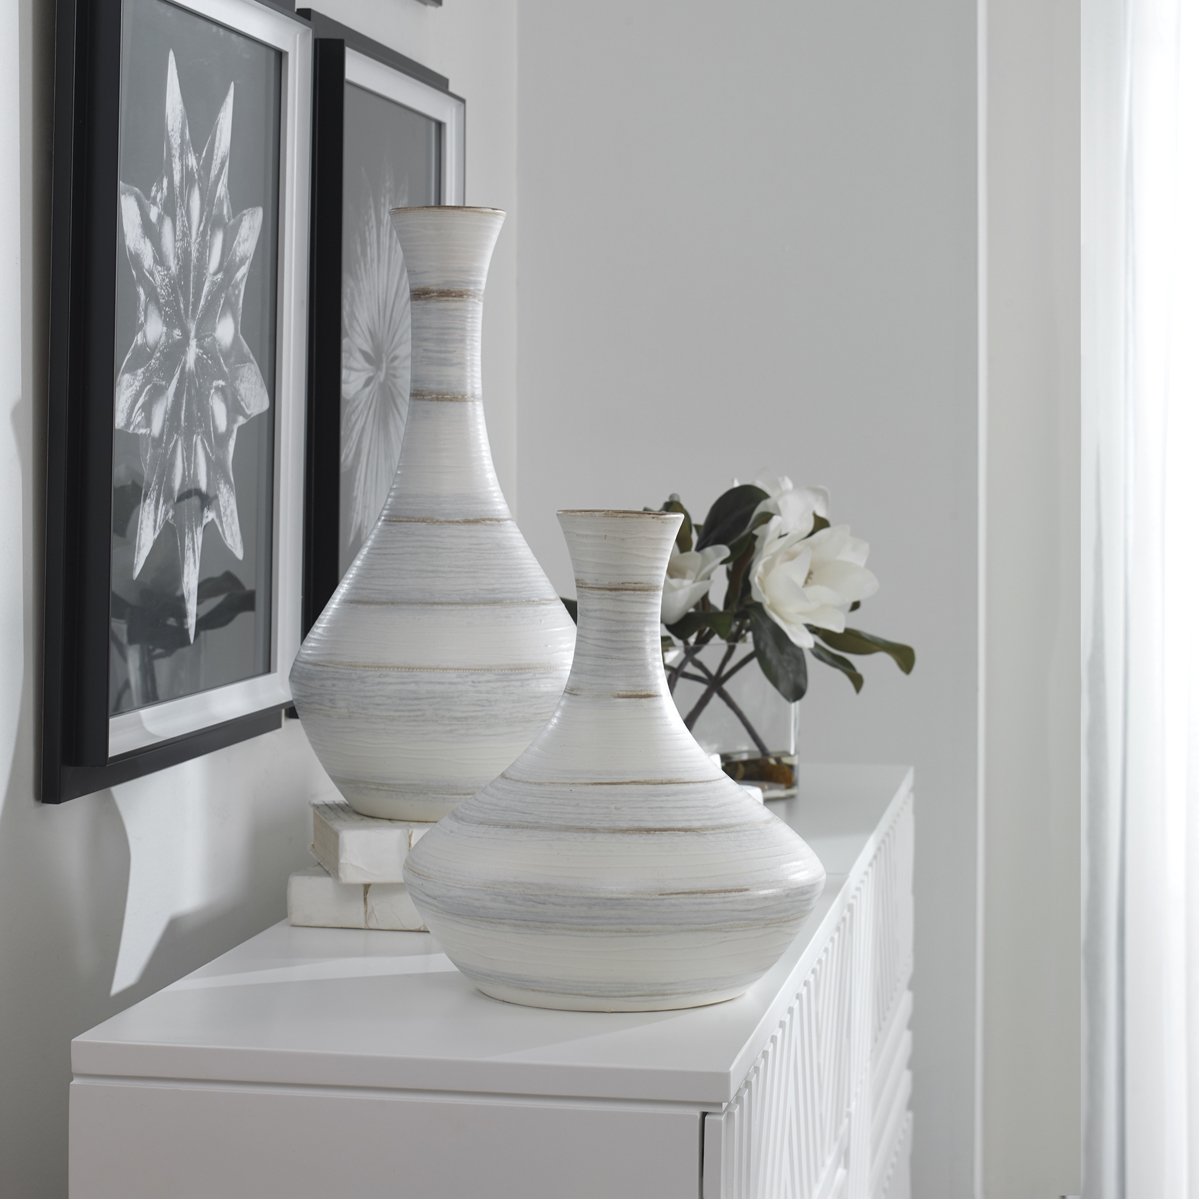 Uttermost Potter Fluted Striped Vases, 2-Piece Set